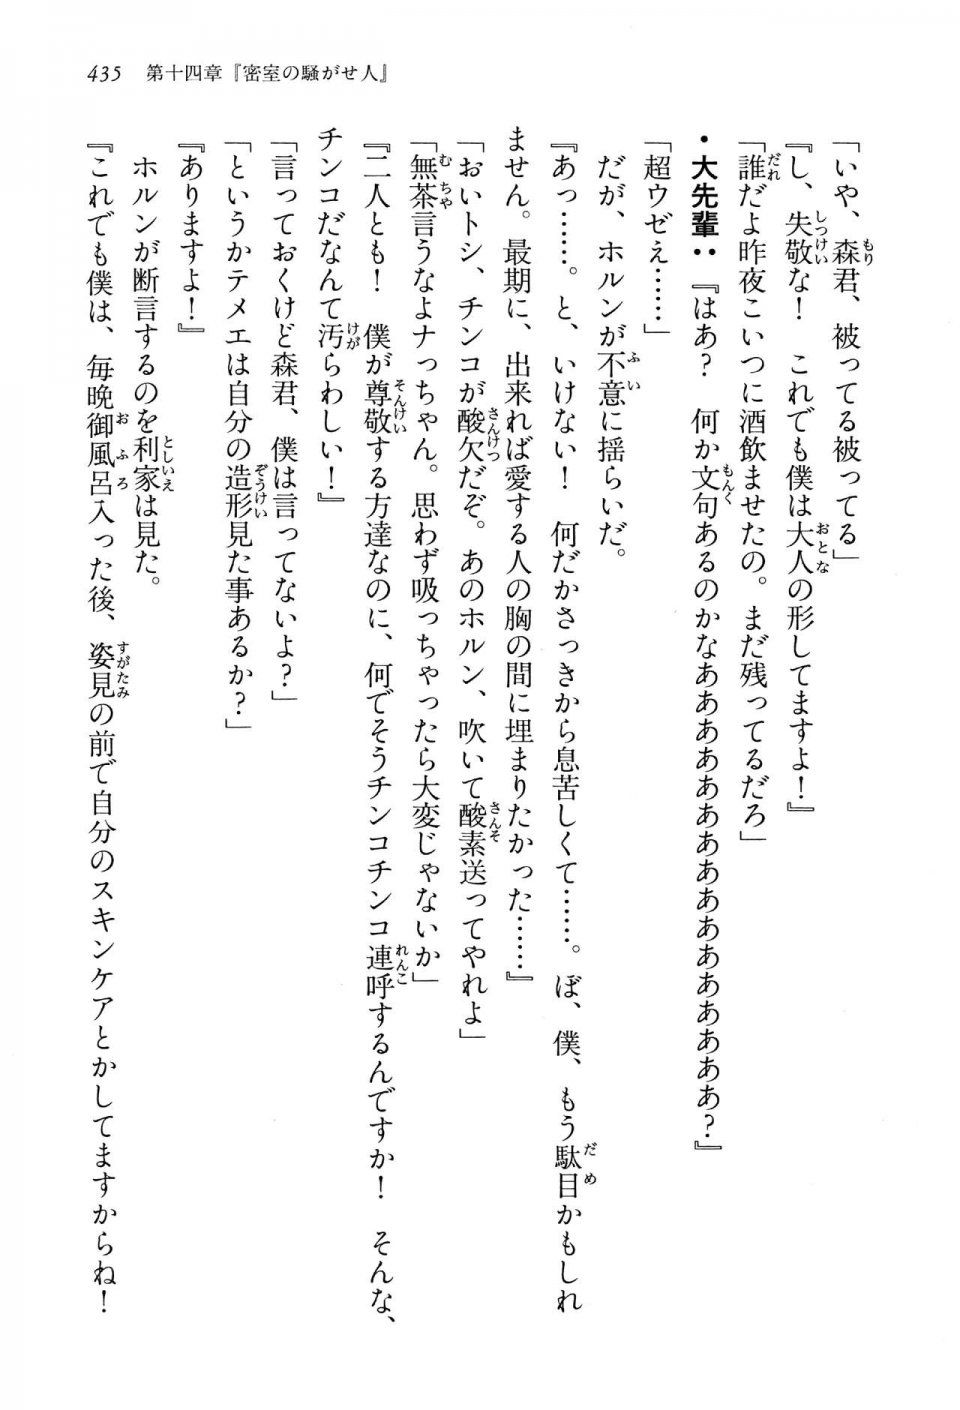 Kyoukai Senjou no Horizon LN Vol 13(6A) - Photo #435